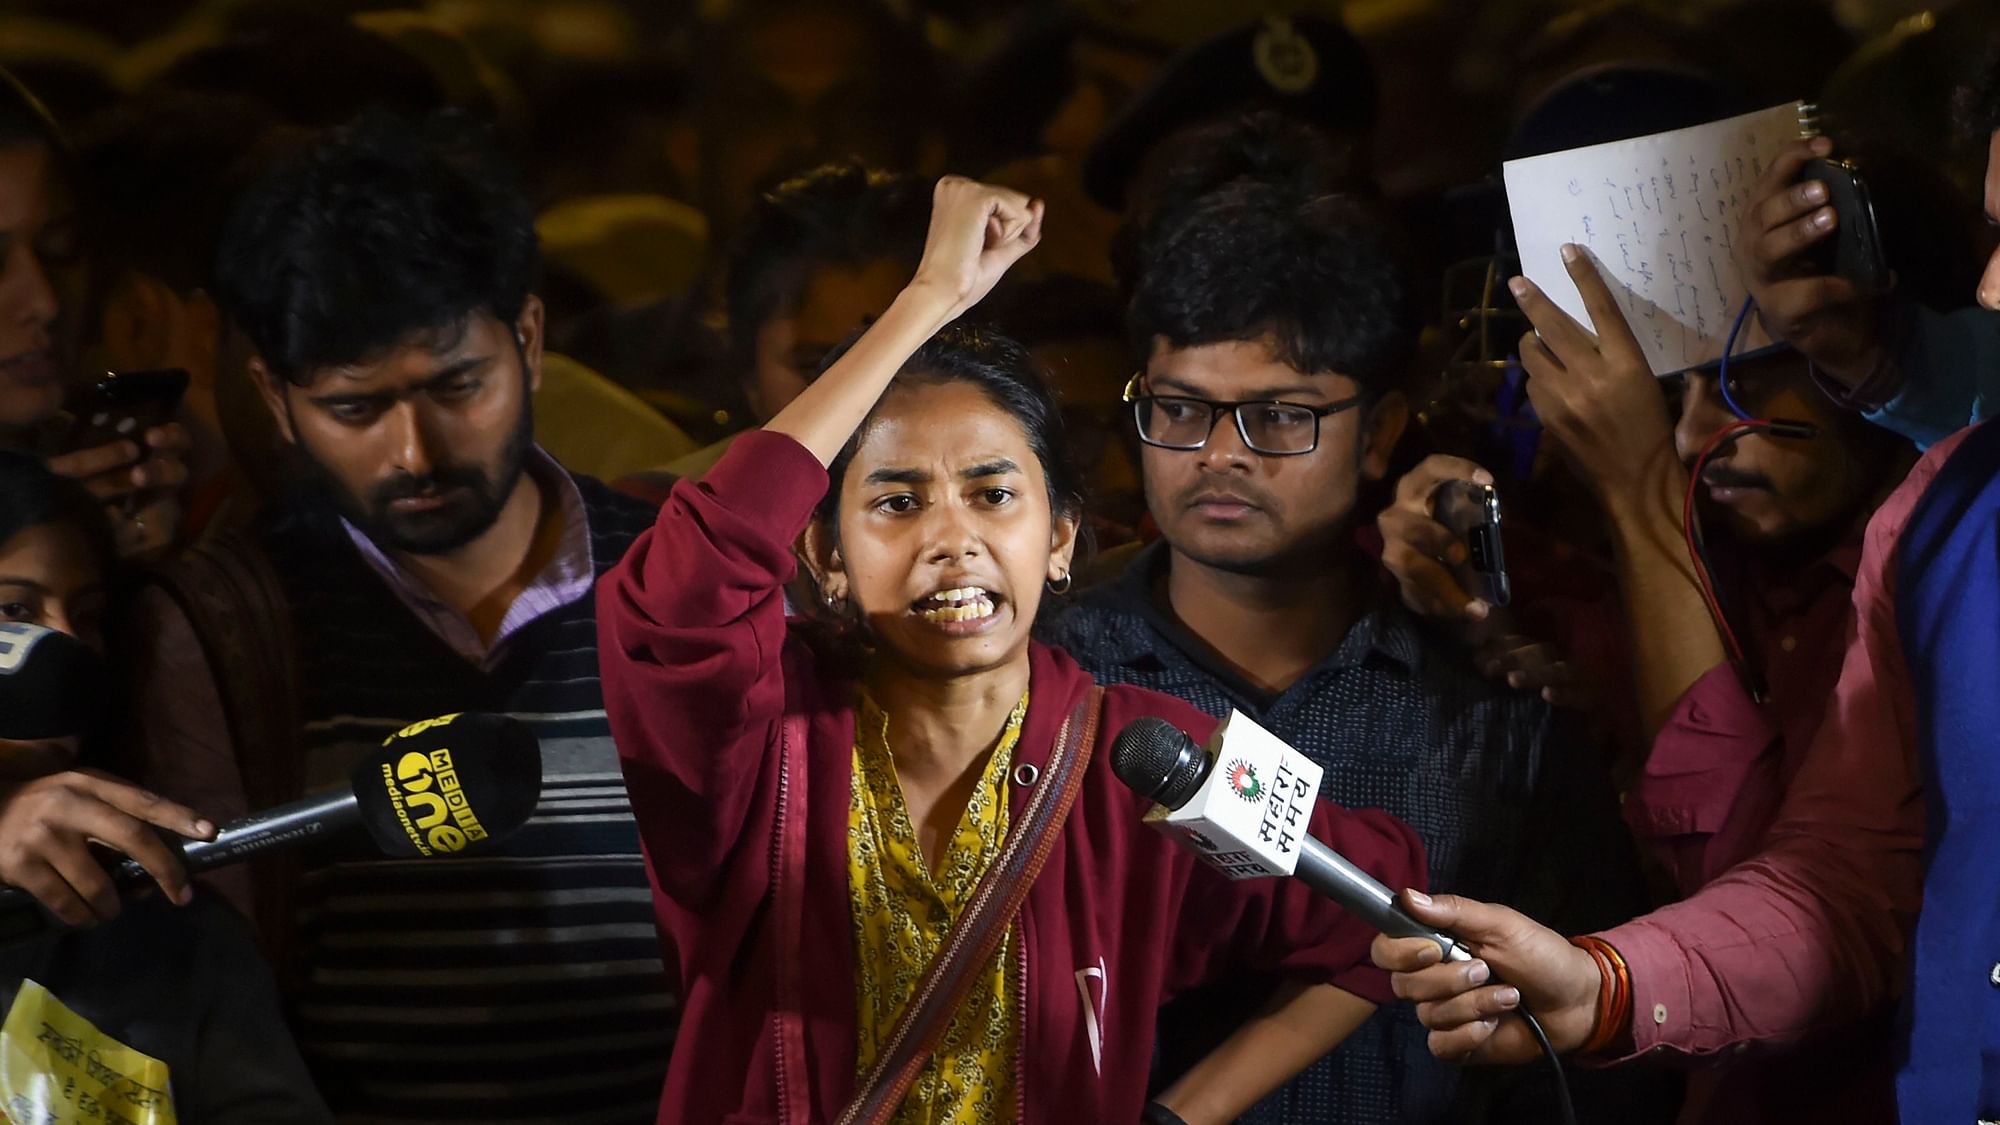 JNU को बुरा मत कहिए,सत्ता तो चाहती है कि छात्र राजनीति से दूर रहें